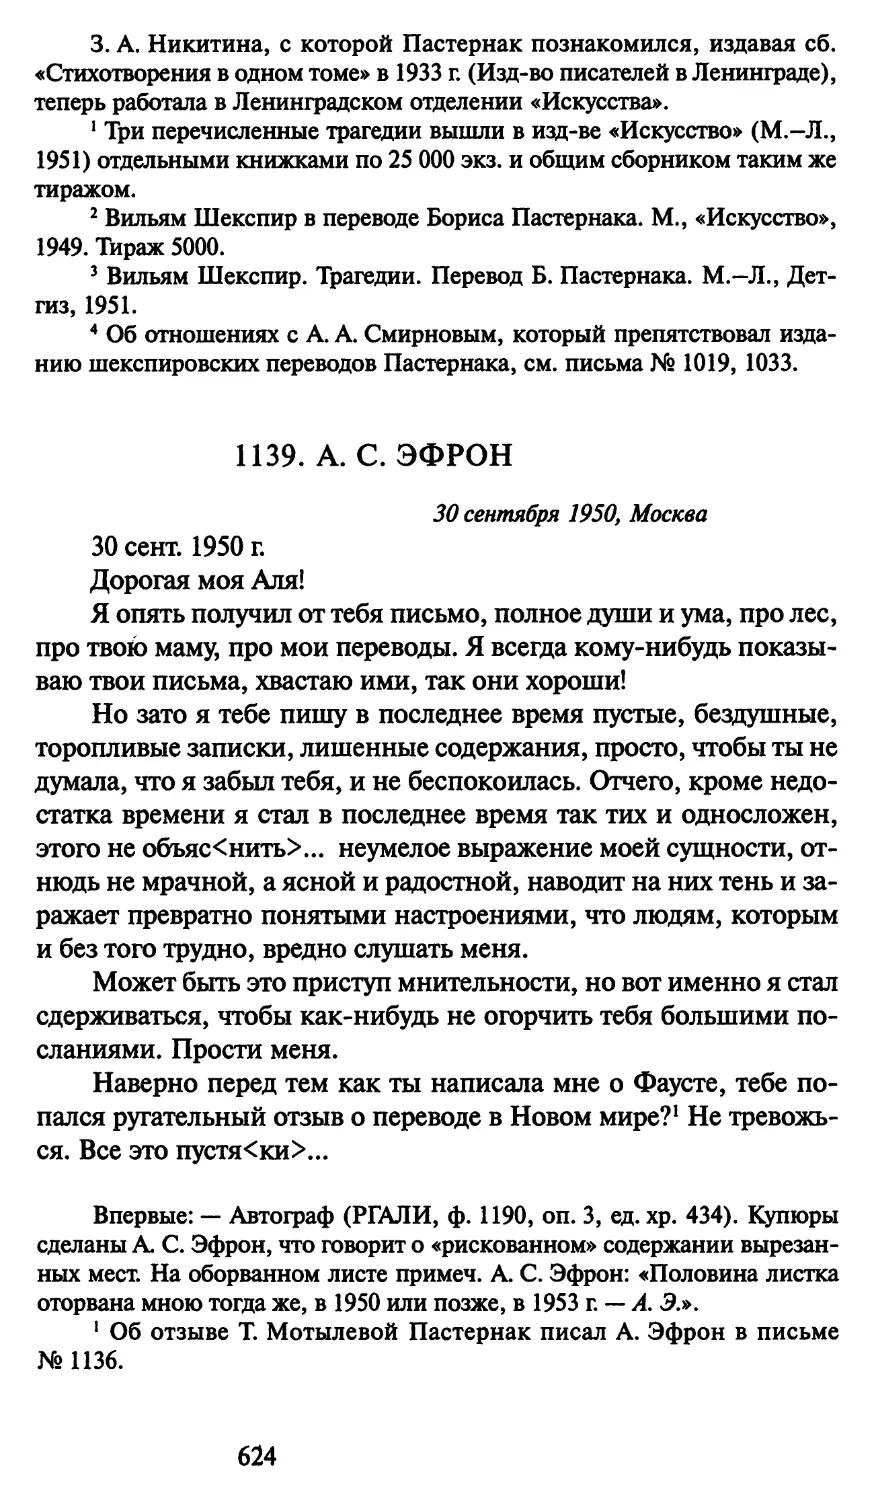 1139. А. С. Эфрон 30 сентября 1950